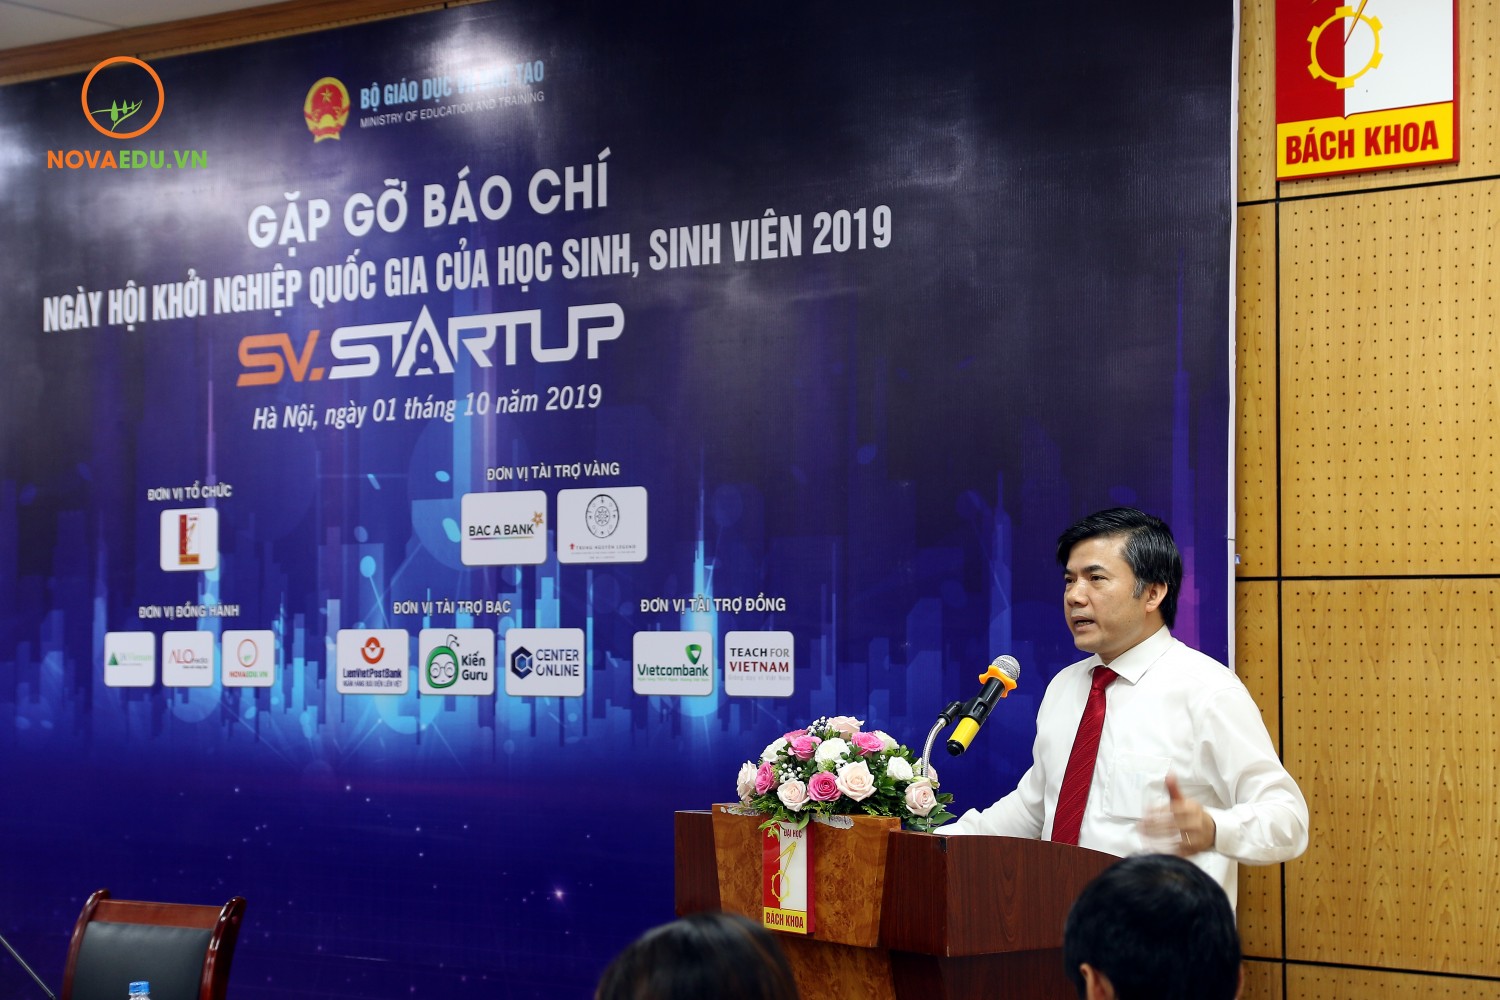 Ông Bùi Văn Linh, Phó Vụ trưởng phụ trách Vụ Giáo dục Chính trị và Công tác Học sinh Sinh viên (Bộ GG&ĐT), Phó trưởng ban Chỉ đạo SV-STARTUP 2019 phát biểu tại họp báo.